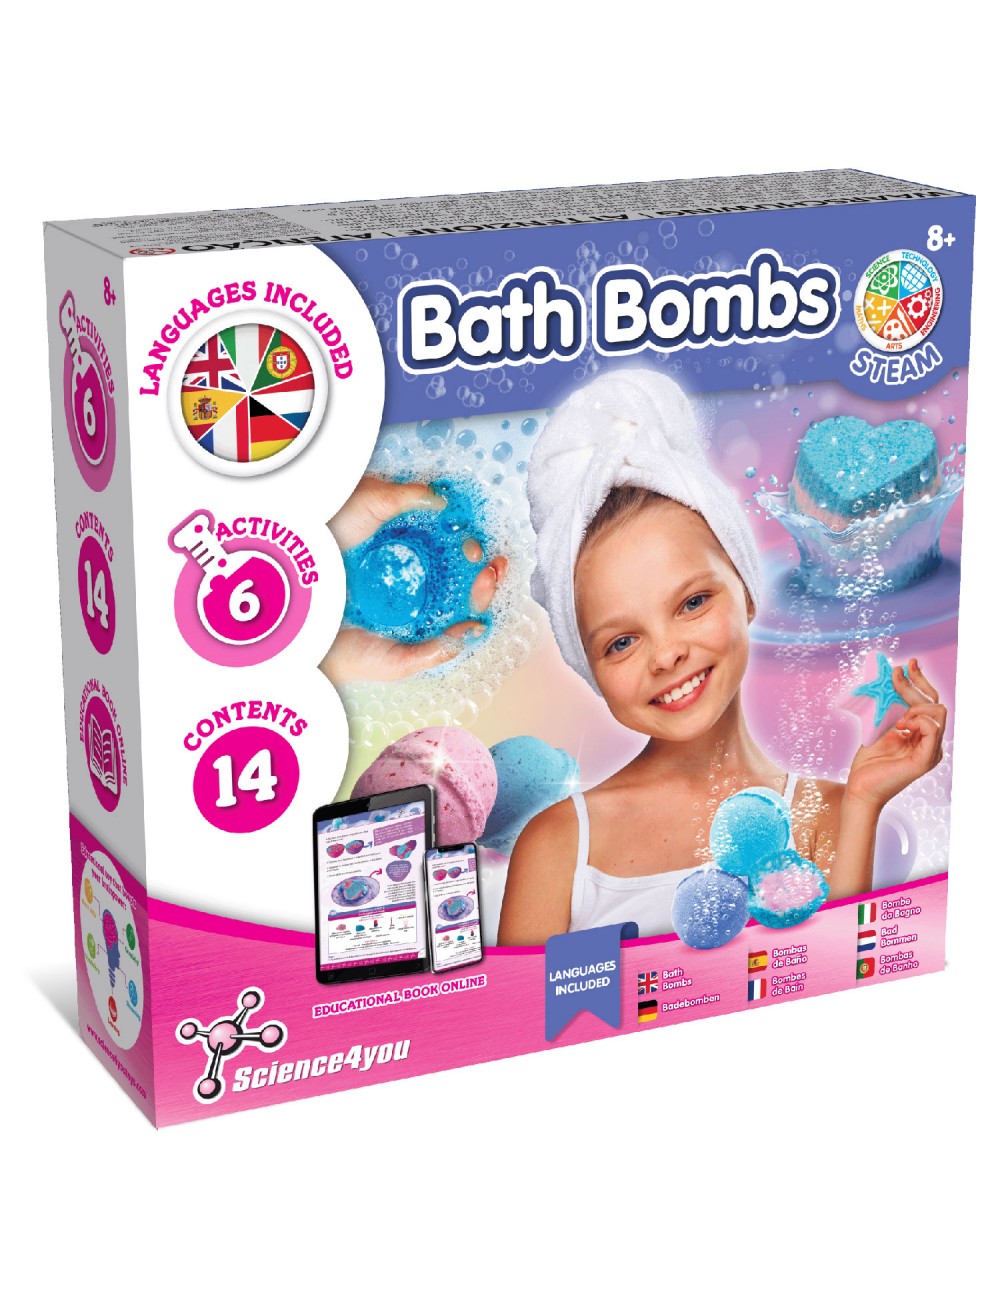 Bombes de bain, Jouets cosmétiques pour enfants 8+